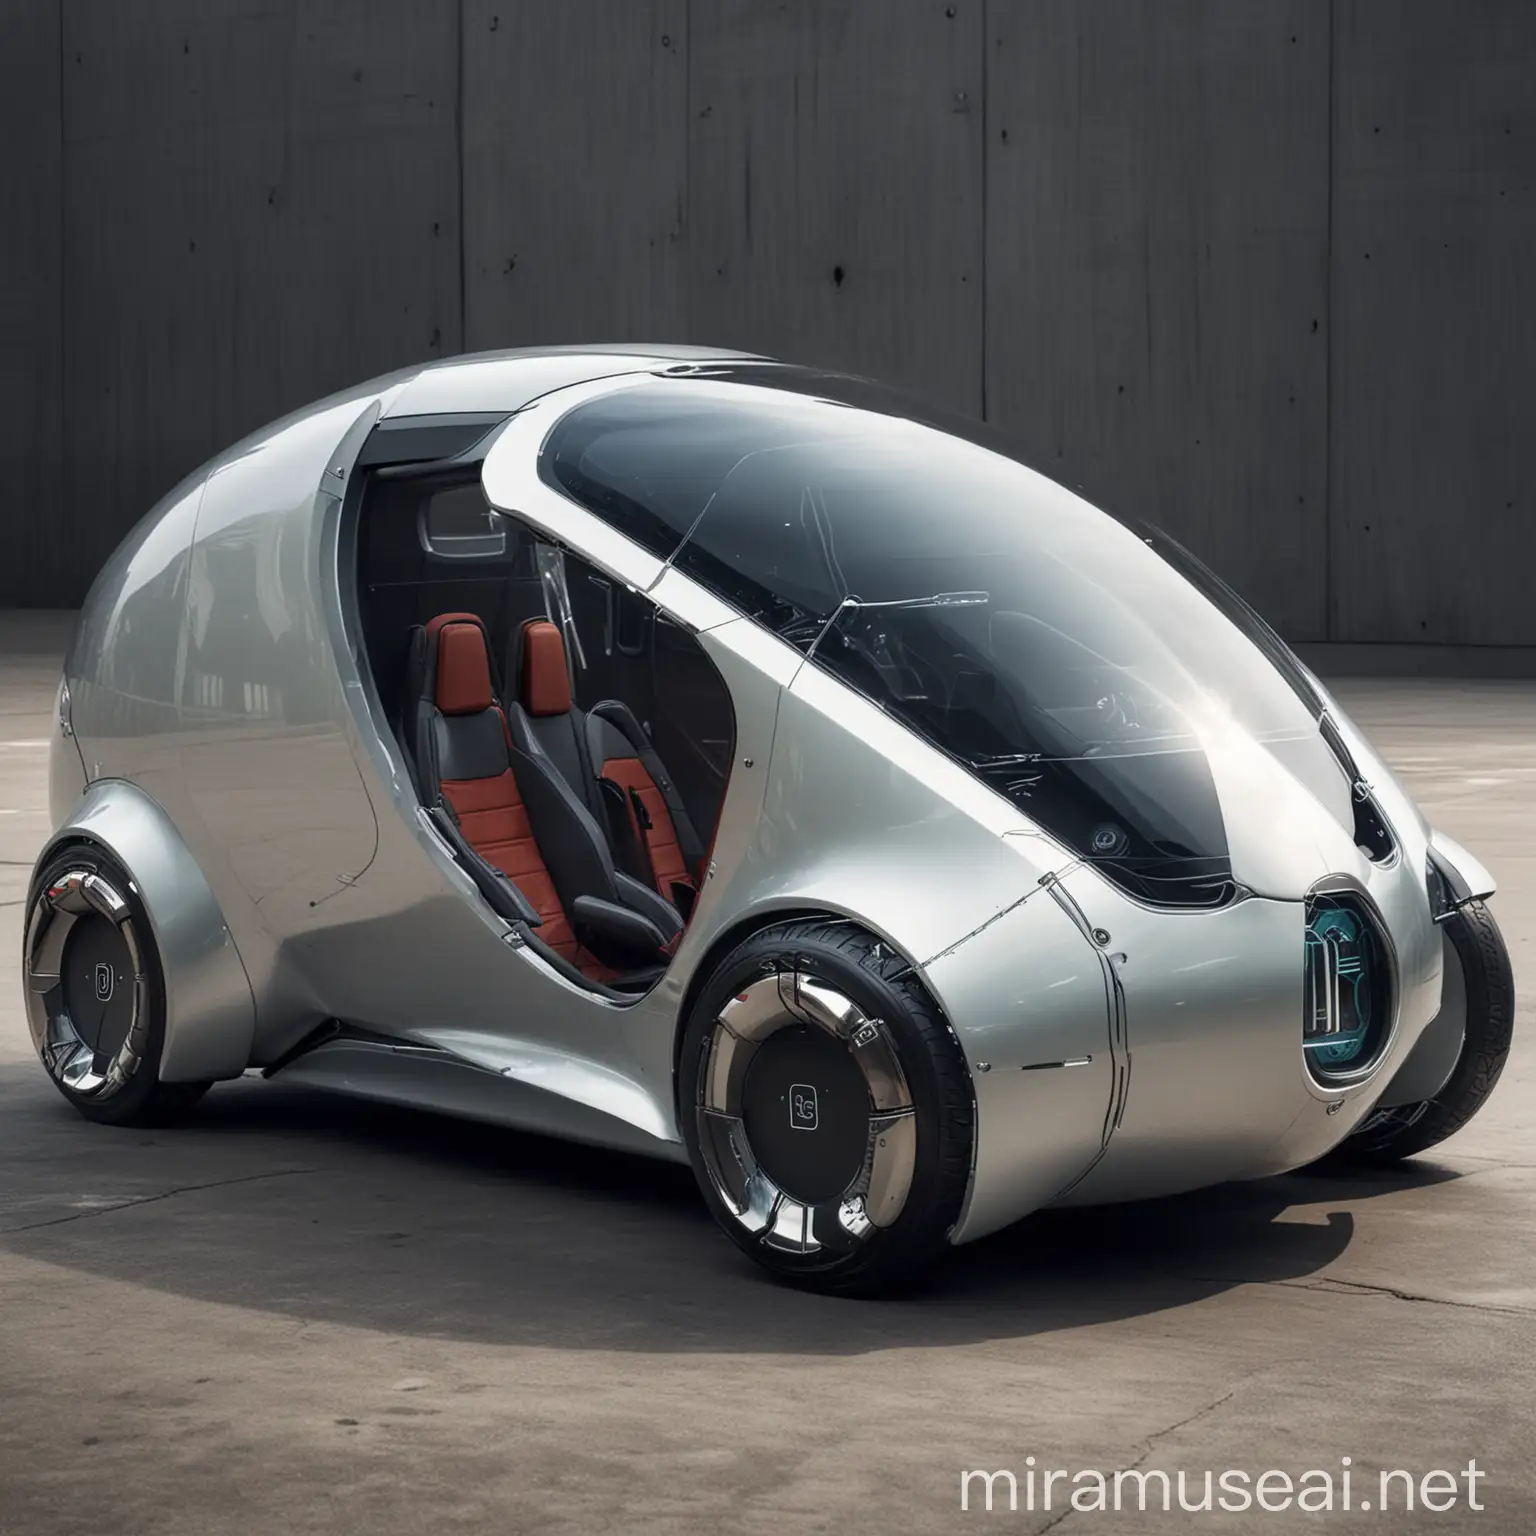 Futuristic Capsule Car in Urban Landscape